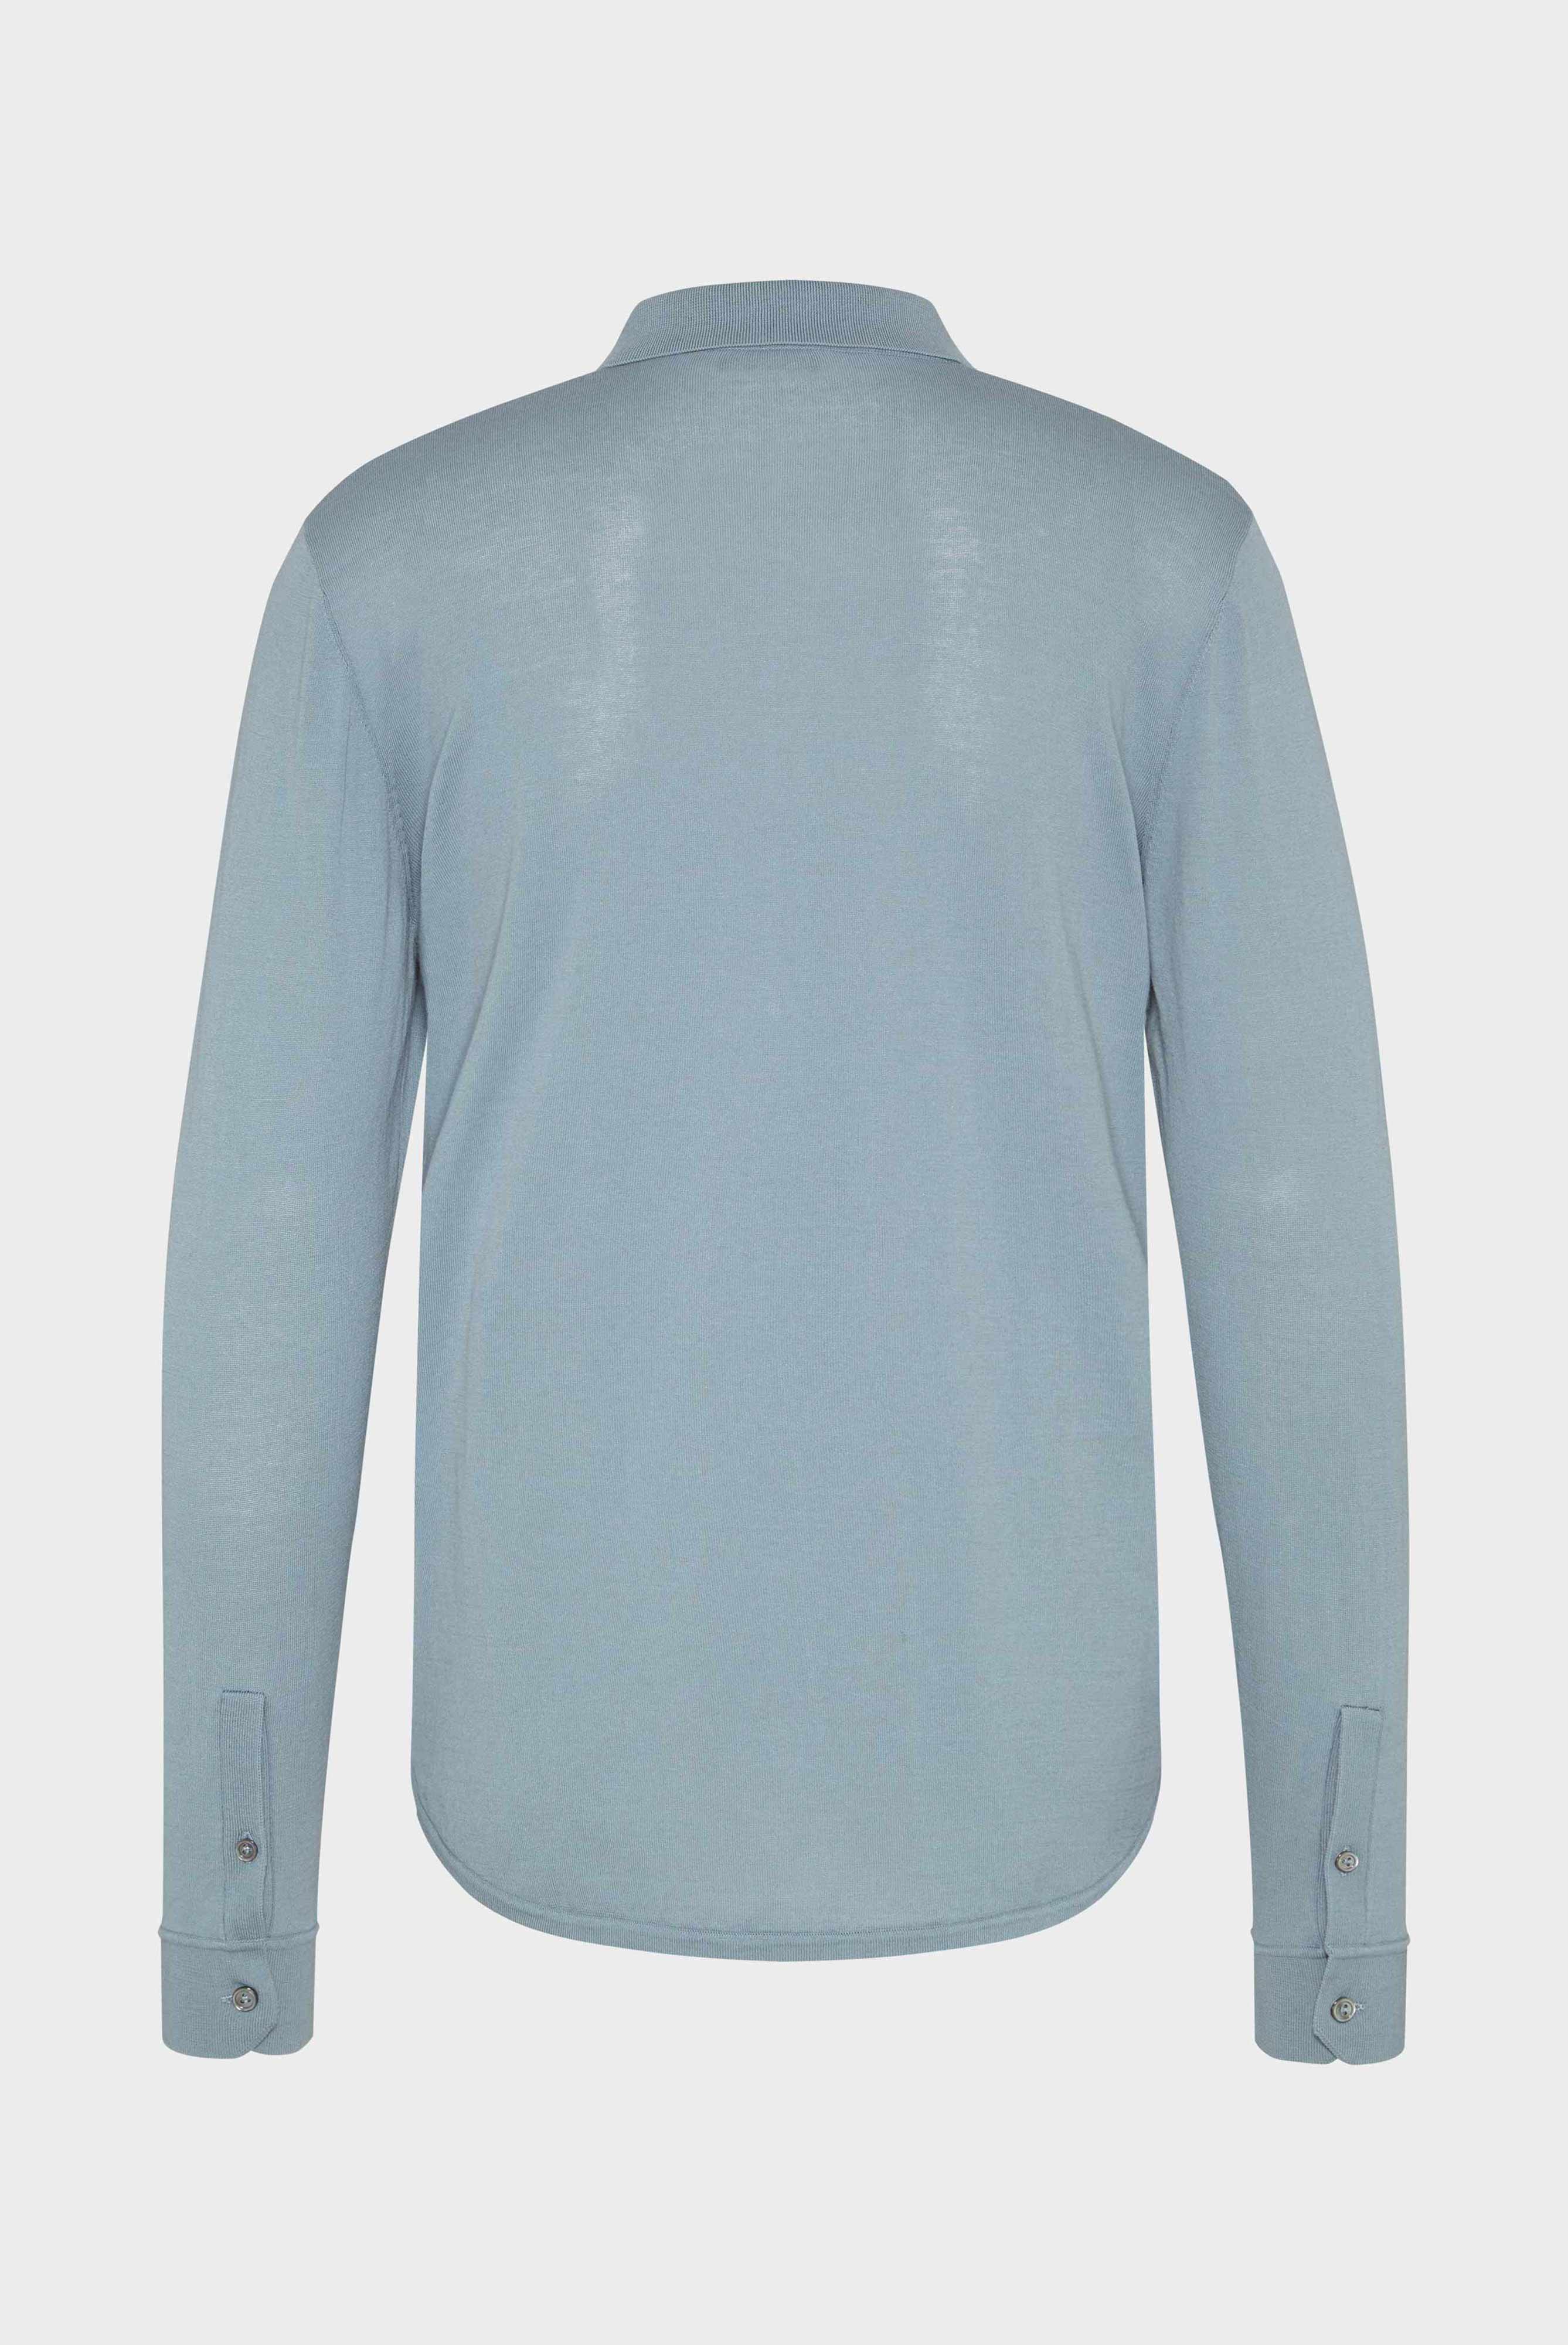 Bügelleichte Hemden+Strick Hemd aus Air Cotton+82.8611..S00174.730.S